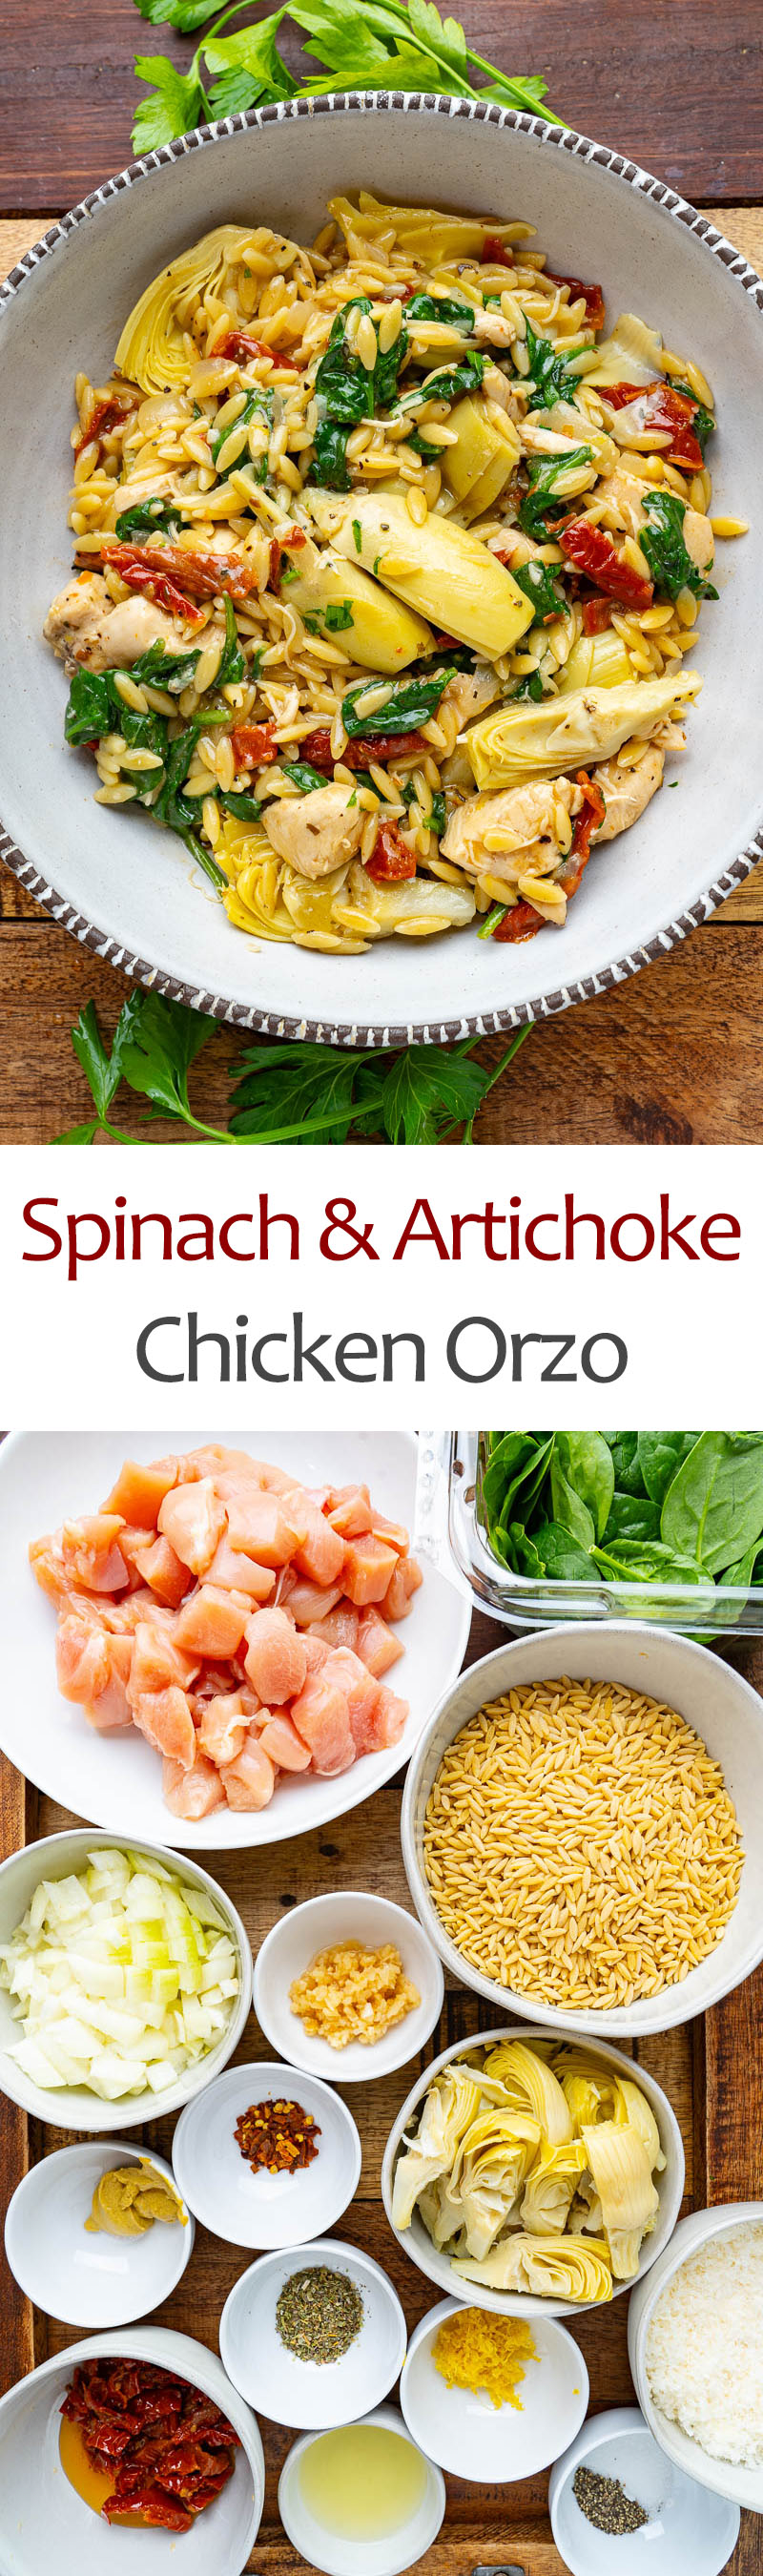 Spinach and Artichoke Chicken Orzo